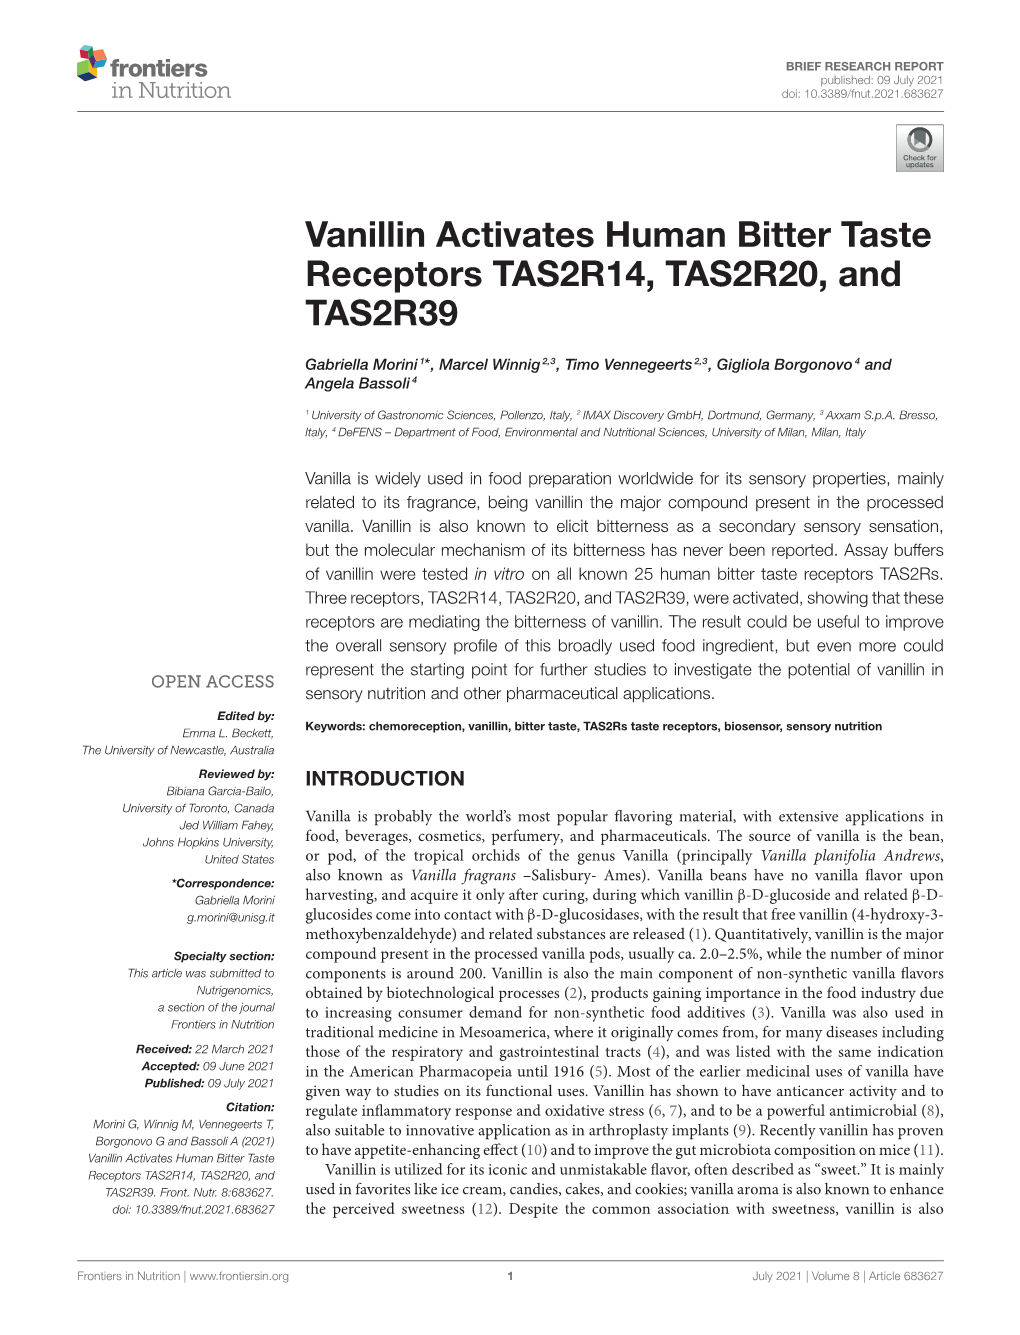 Vanillin Activates Human Bitter Taste Receptors TAS2R14, TAS2R20, and TAS2R39